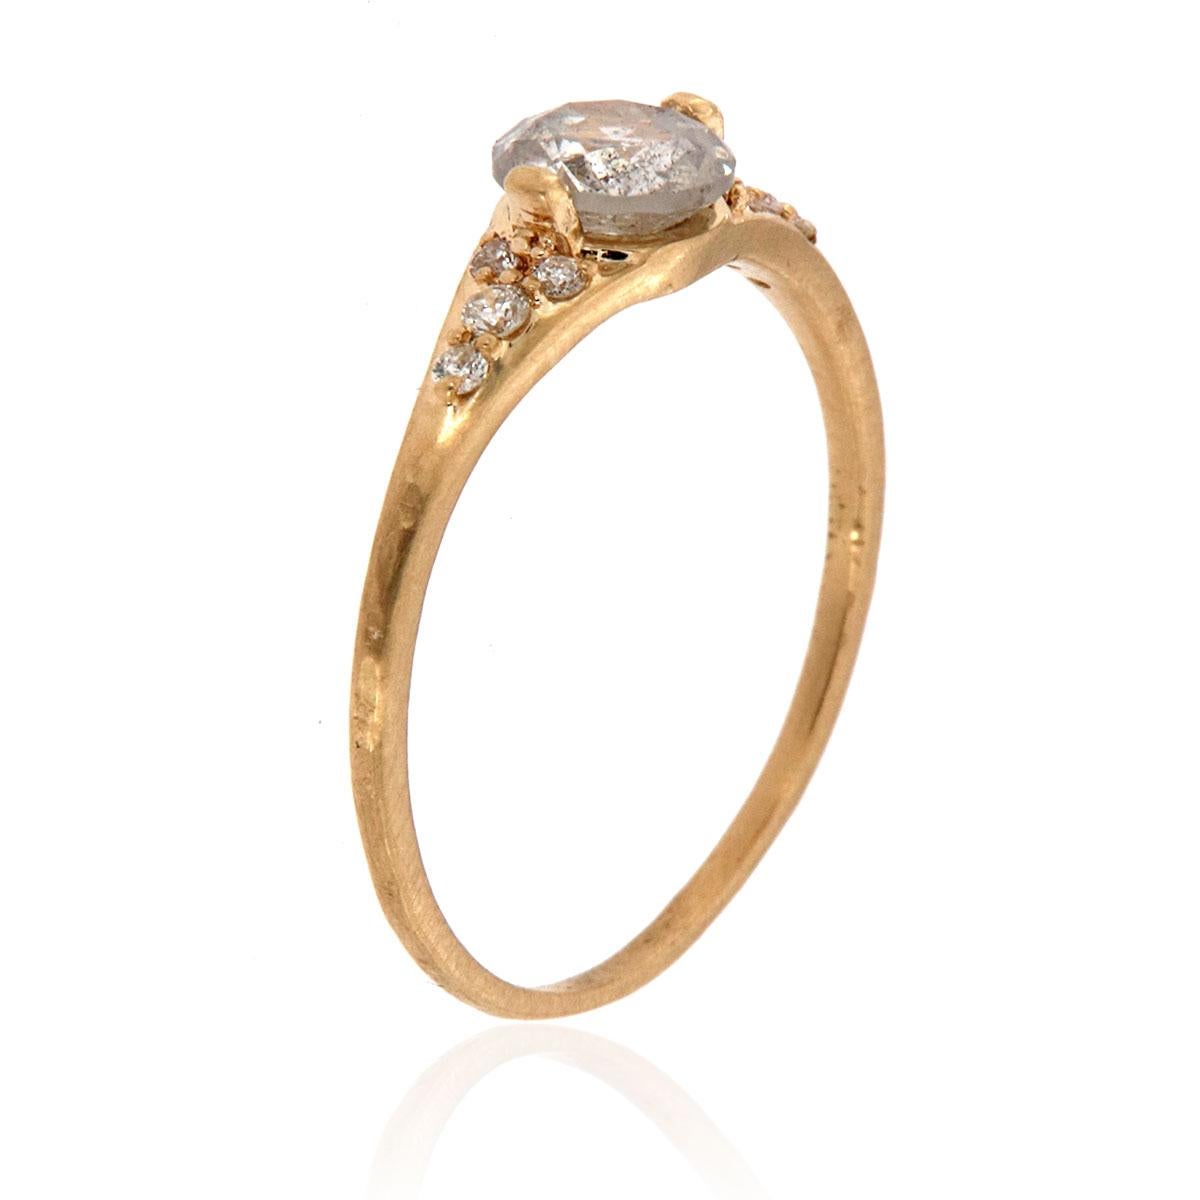 Dieser handgefertigte, rustikale Ring im organischen Design ist mit einem 0,65-karätigen natürlichen Diamanten im Salt & Pepper Rose-Schliff in zwei Zacken besetzt. Vier runde Diamanten sind gleichmäßig auf jeder Seite des zentralen Edelsteins